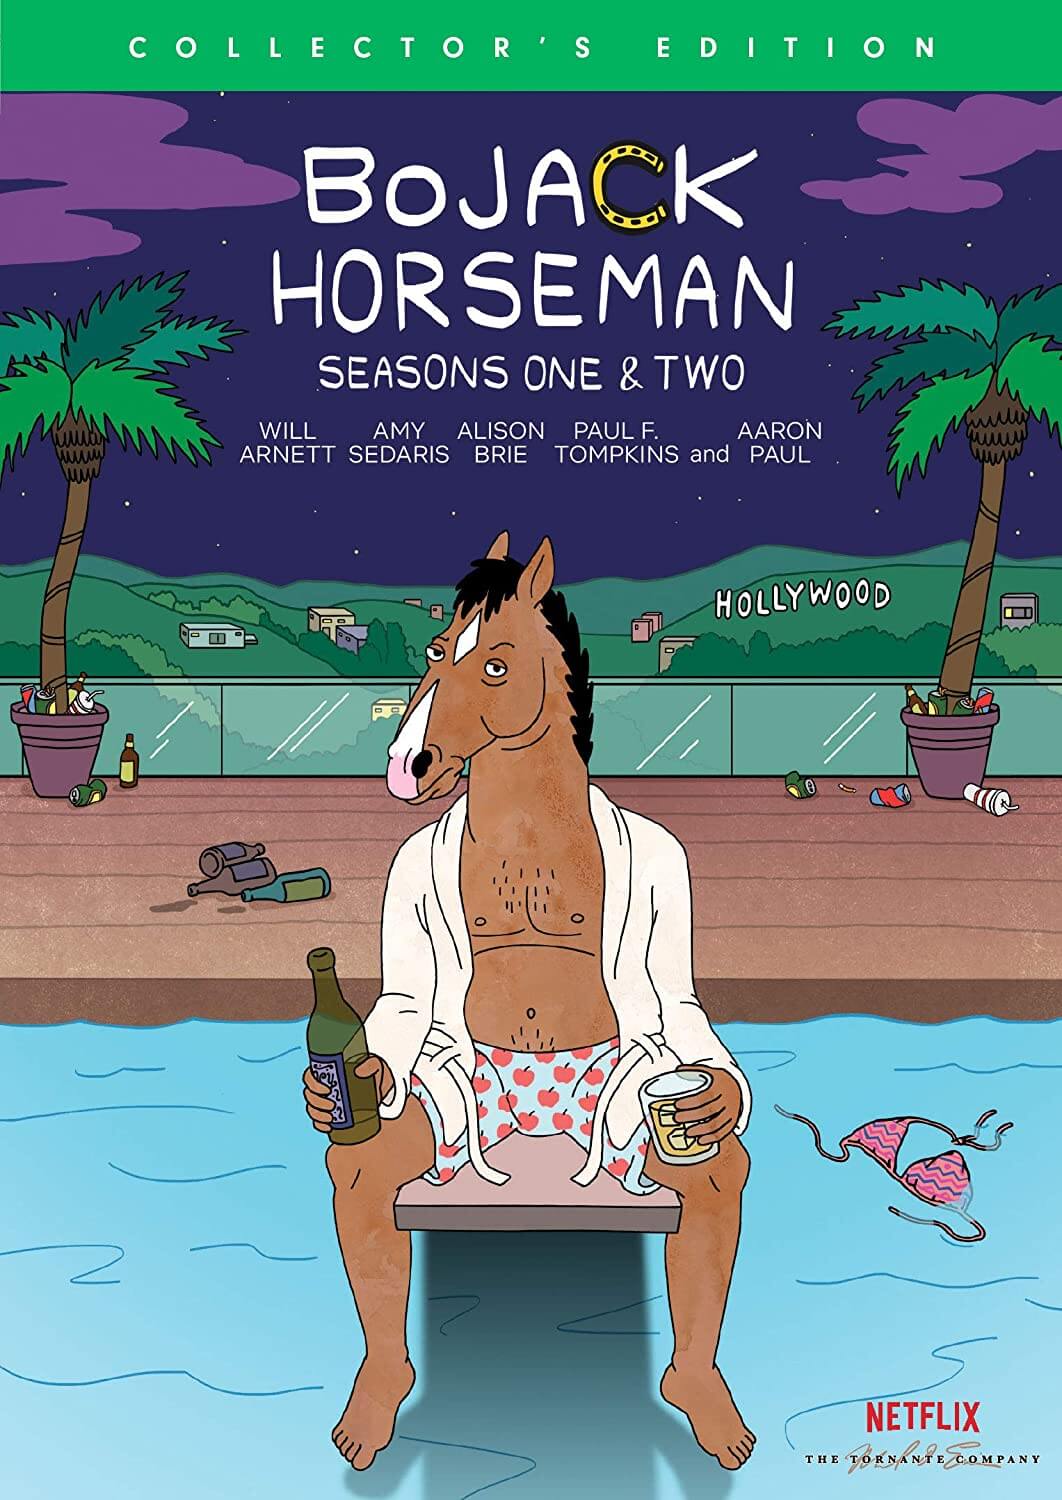 "Bojack Horseman" seasons one and two